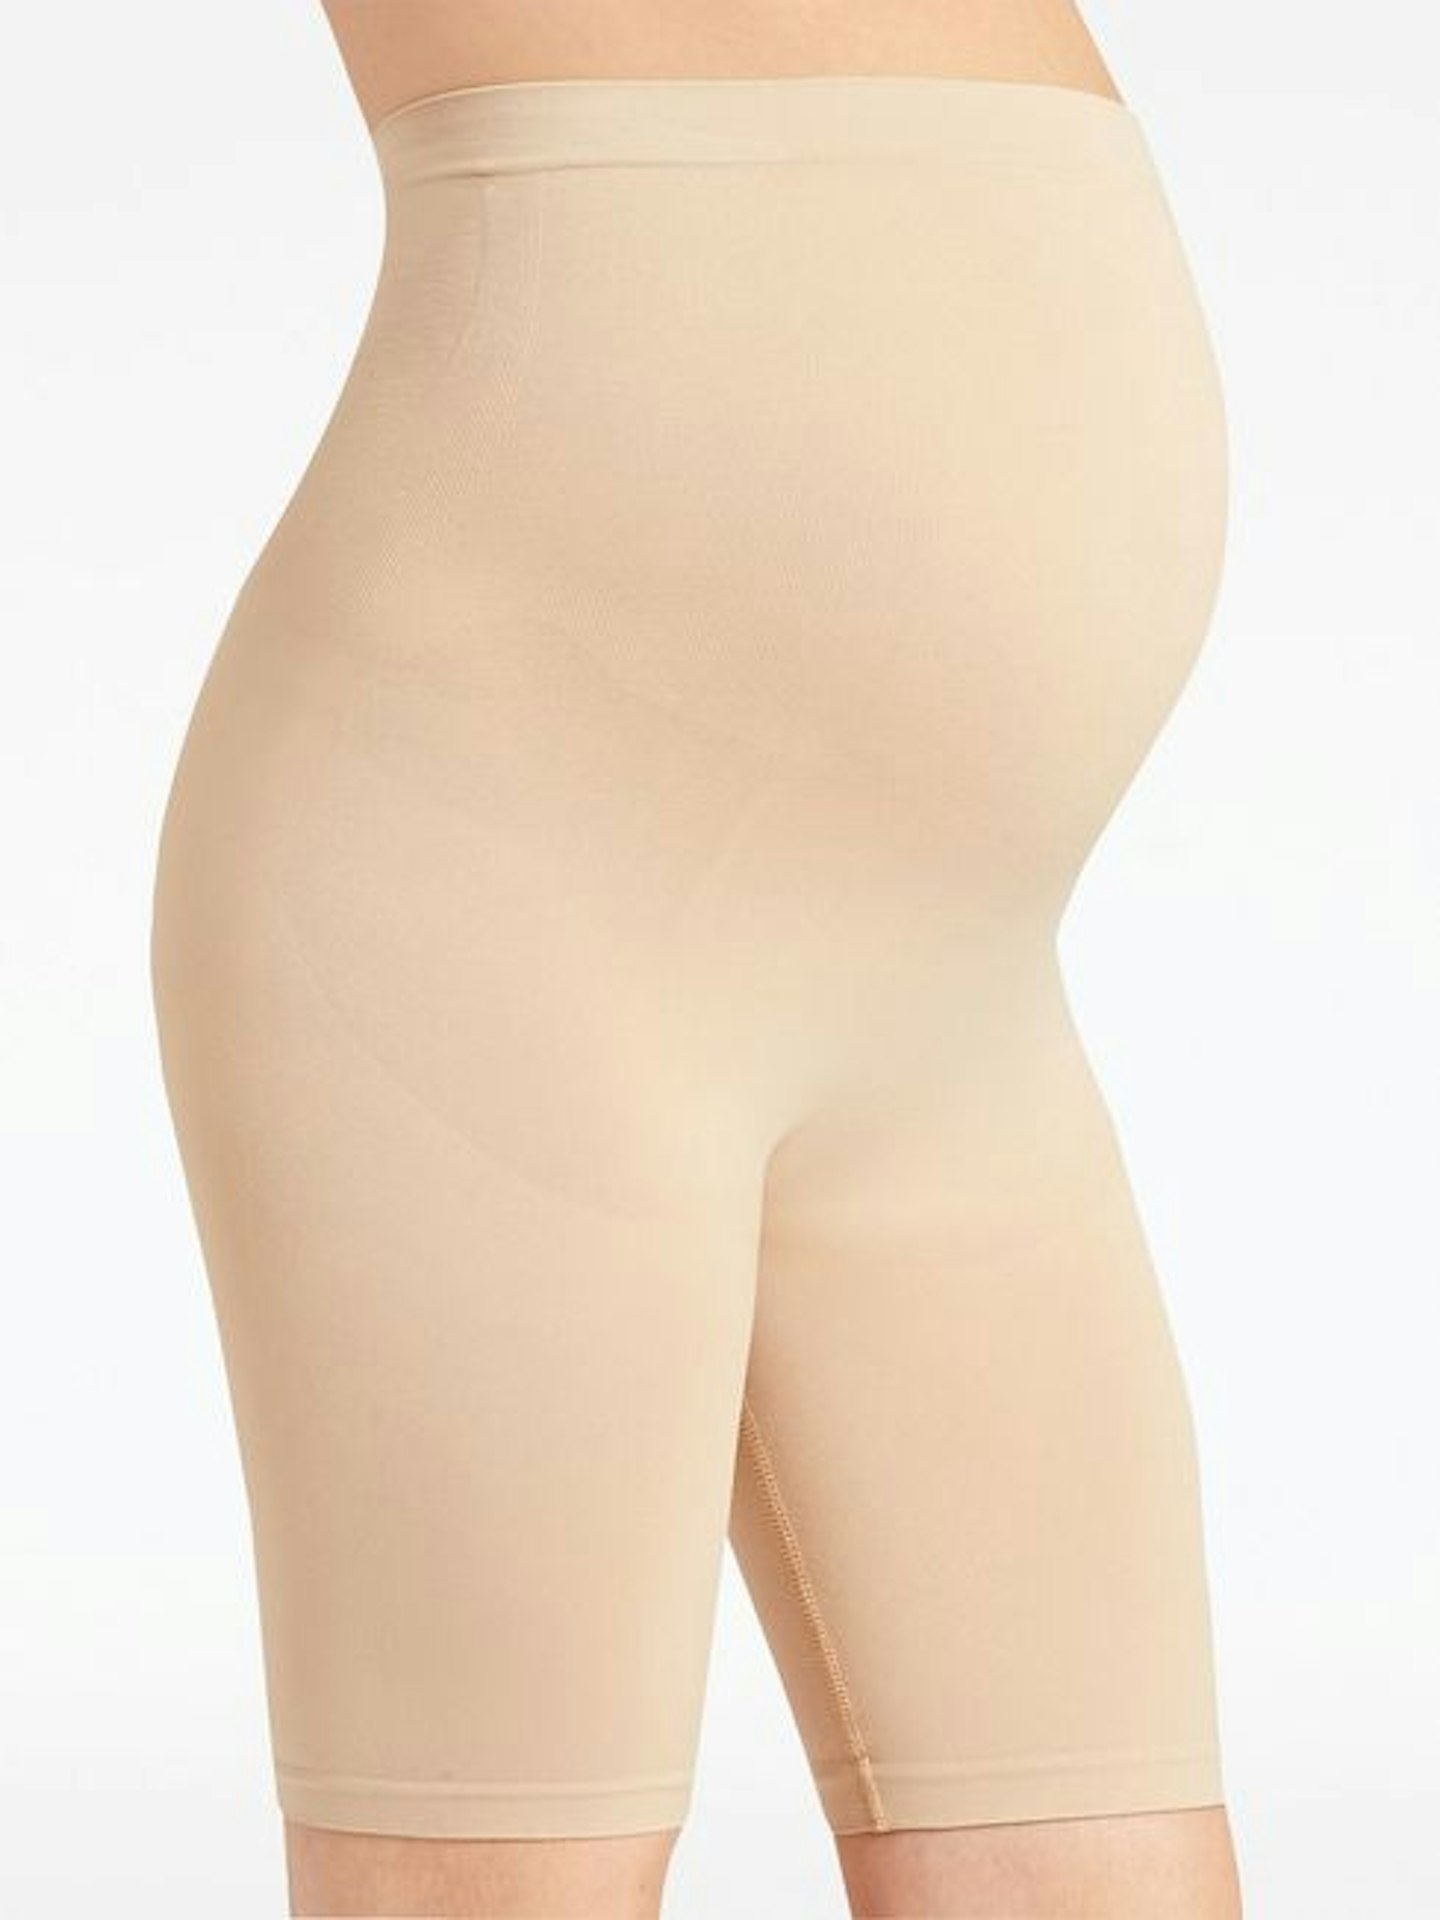 JoJo Maman Bebe Dual Support And Slimming Maternity Shorts